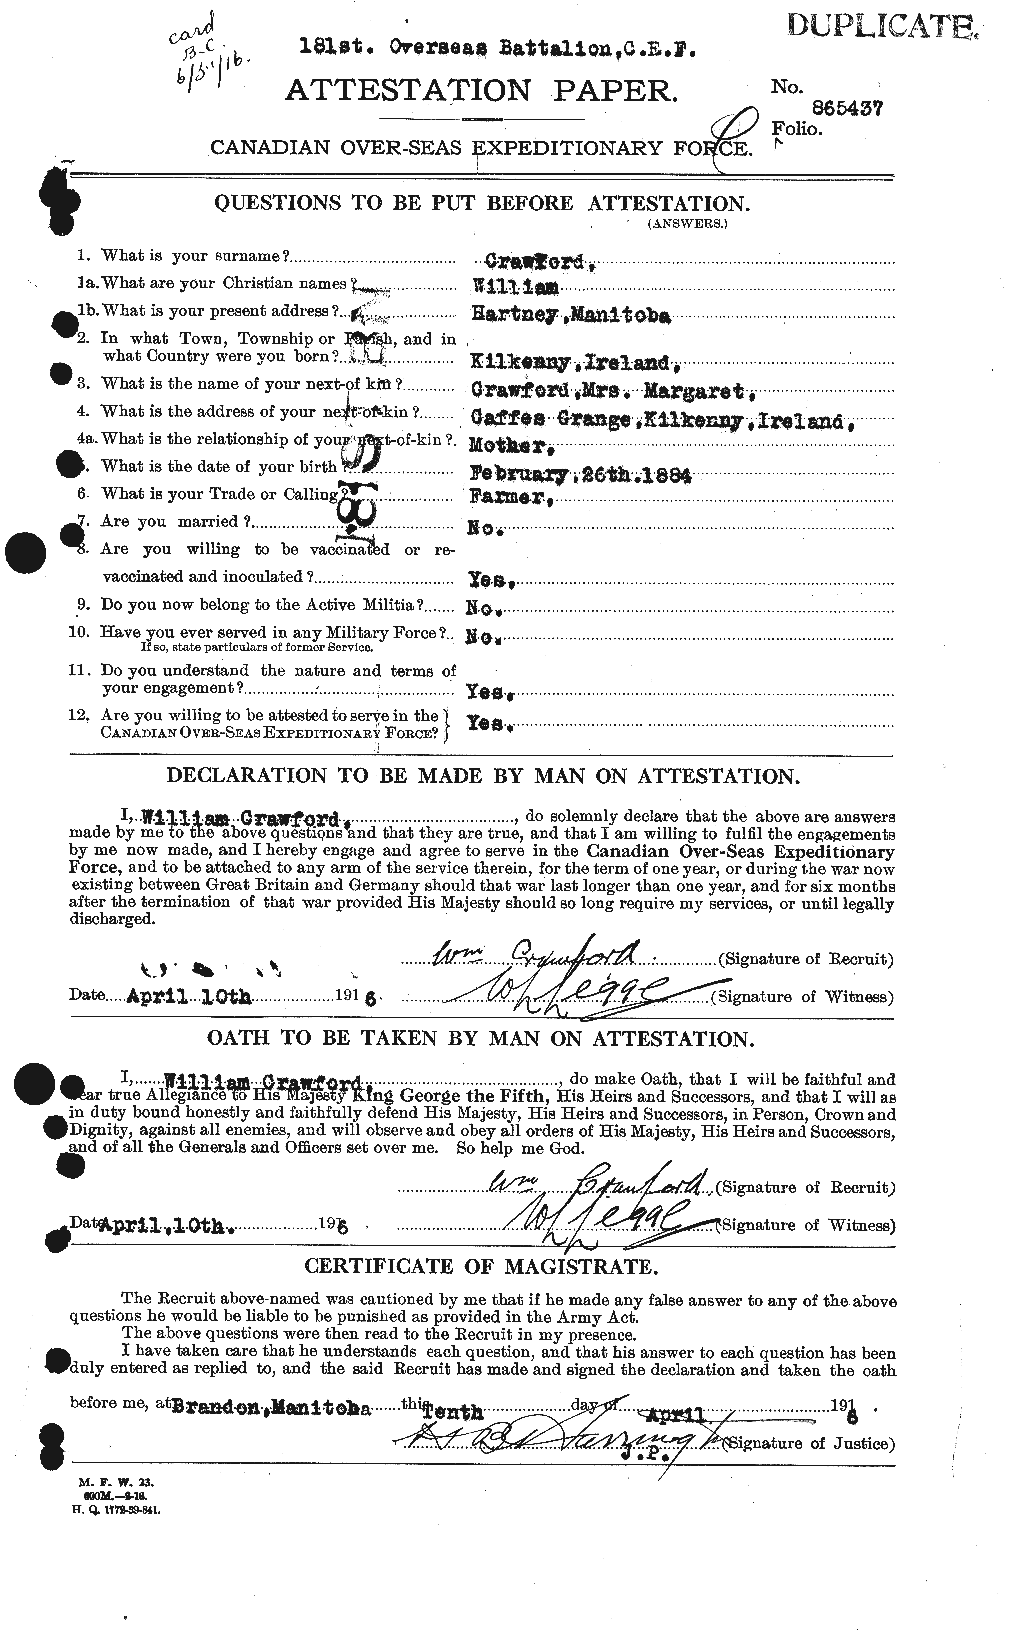 Dossiers du Personnel de la Première Guerre mondiale - CEC 061165a